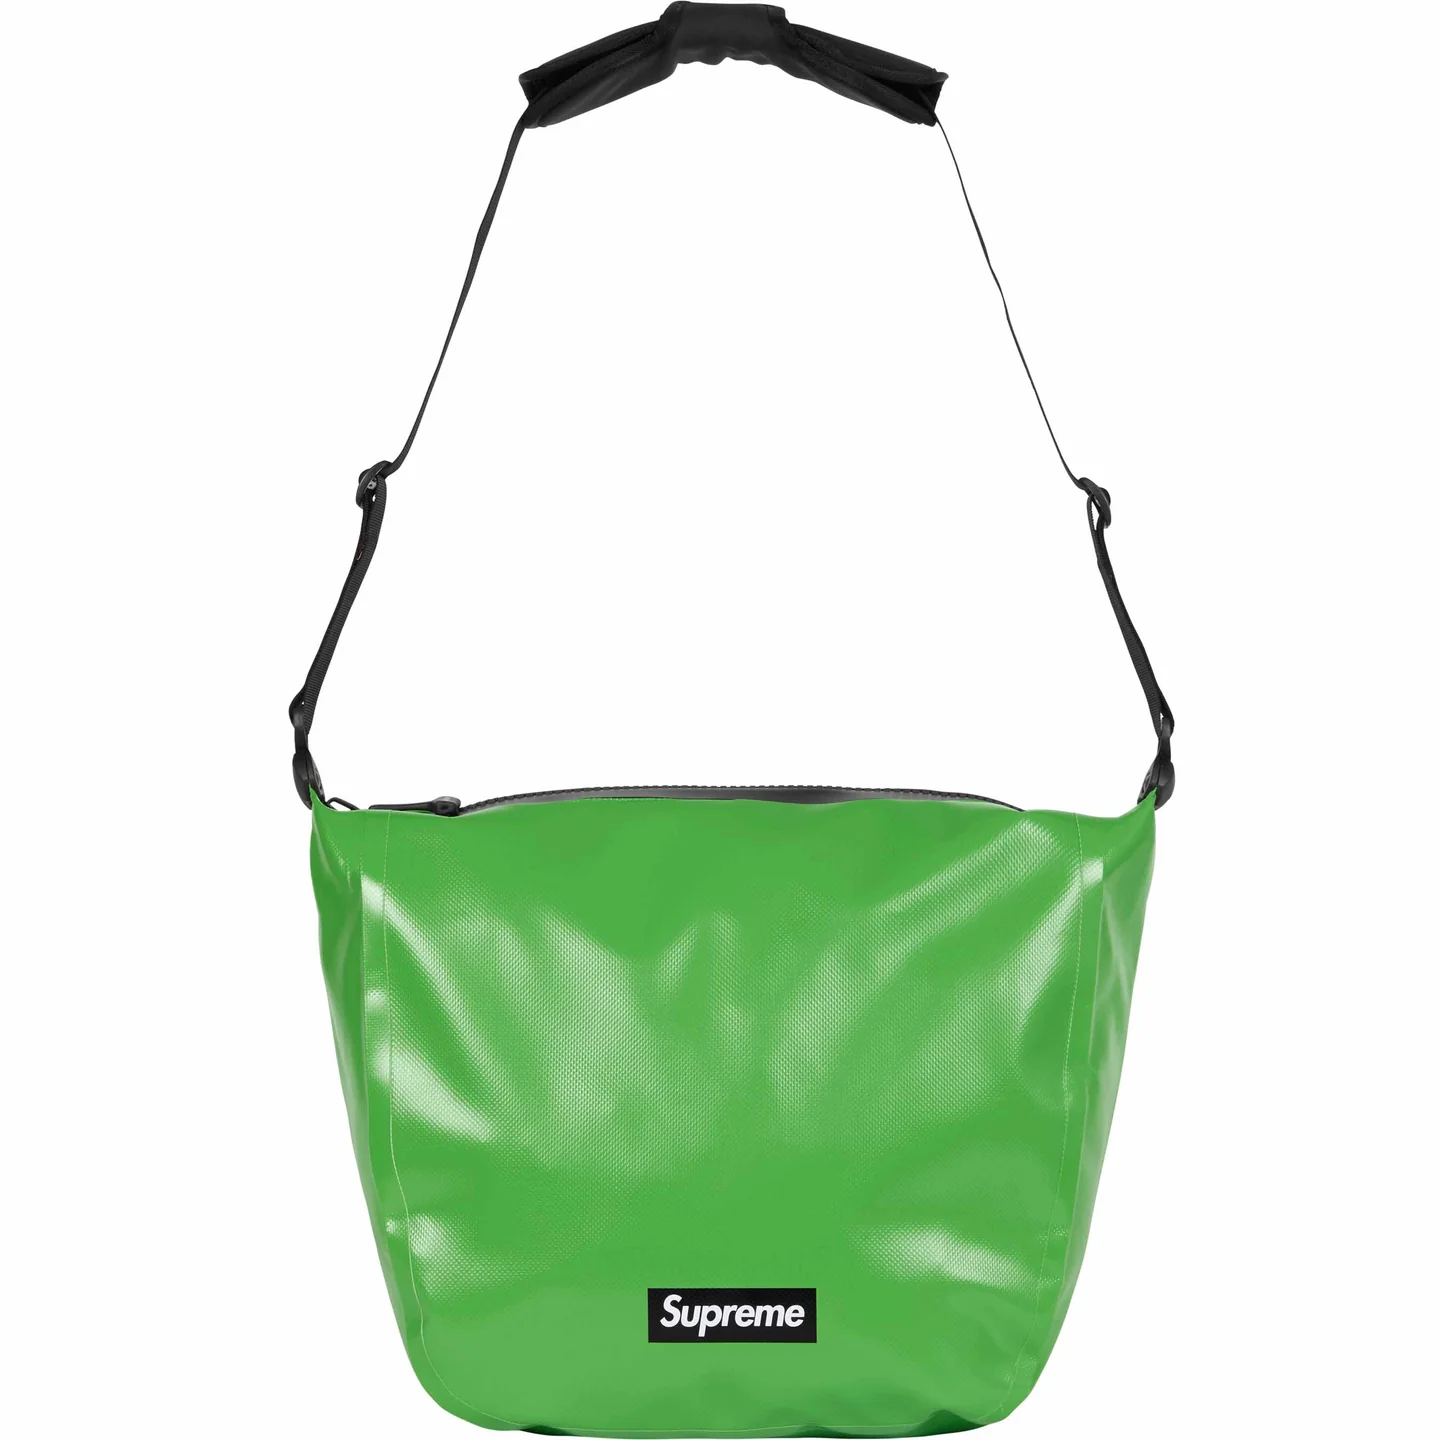 Supreme®/ORTLIEB Small Messenger Bag